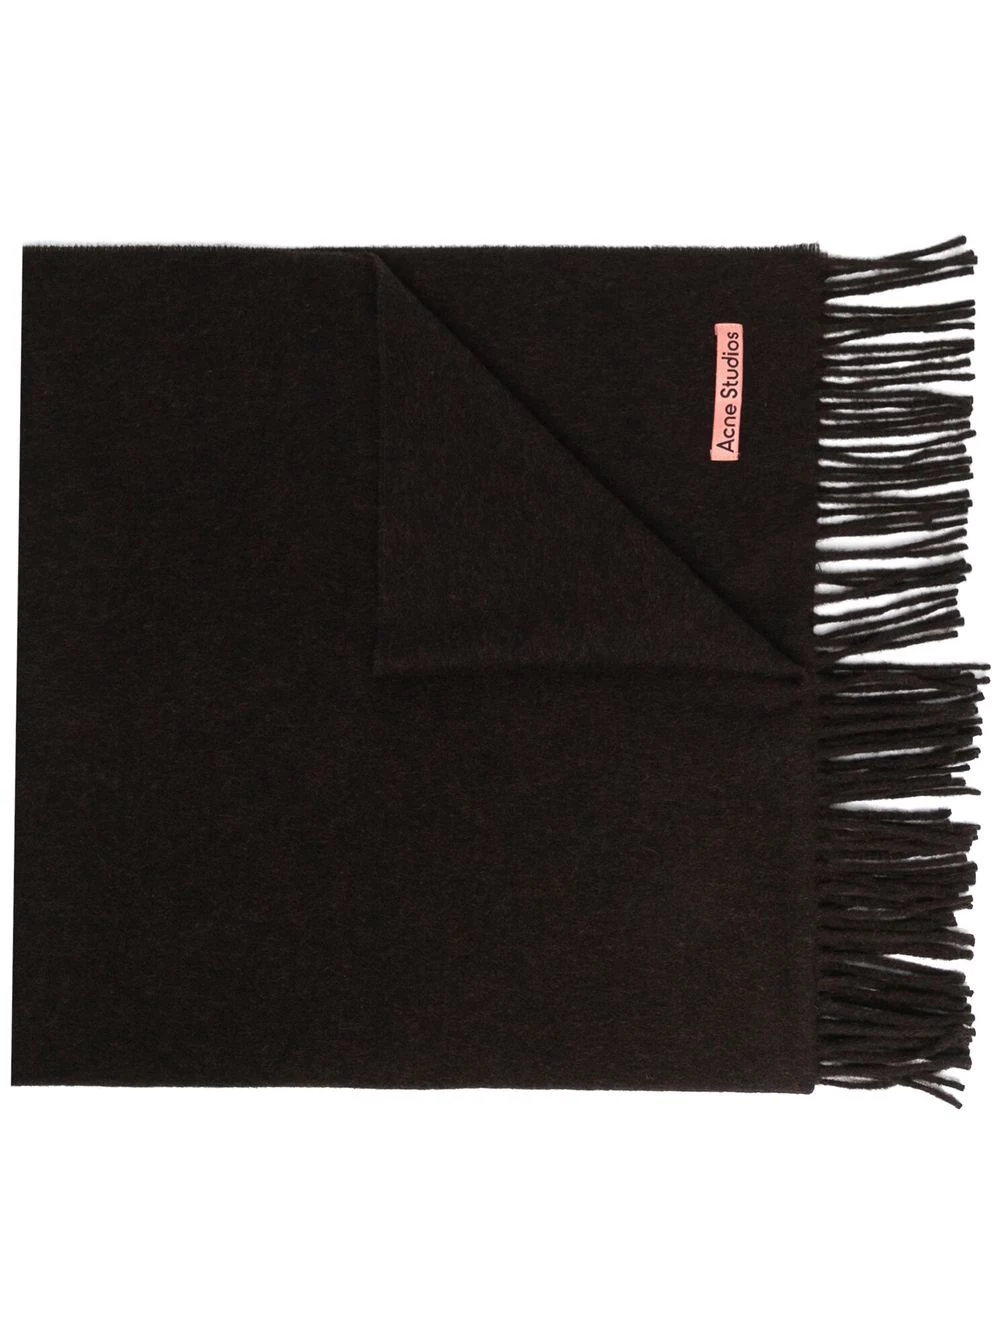 推荐ACNE STUDIOS 男女同款黑色羊毛超大款流苏边围巾 CA0102-BLACK商品